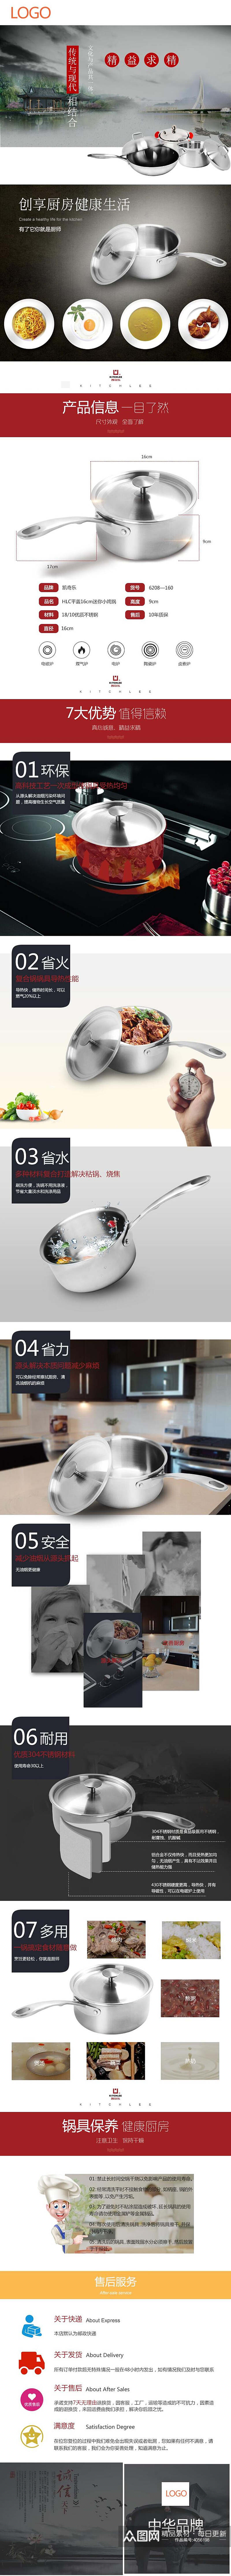 创享厨房健康生活铁锅厨具手机版详情页素材